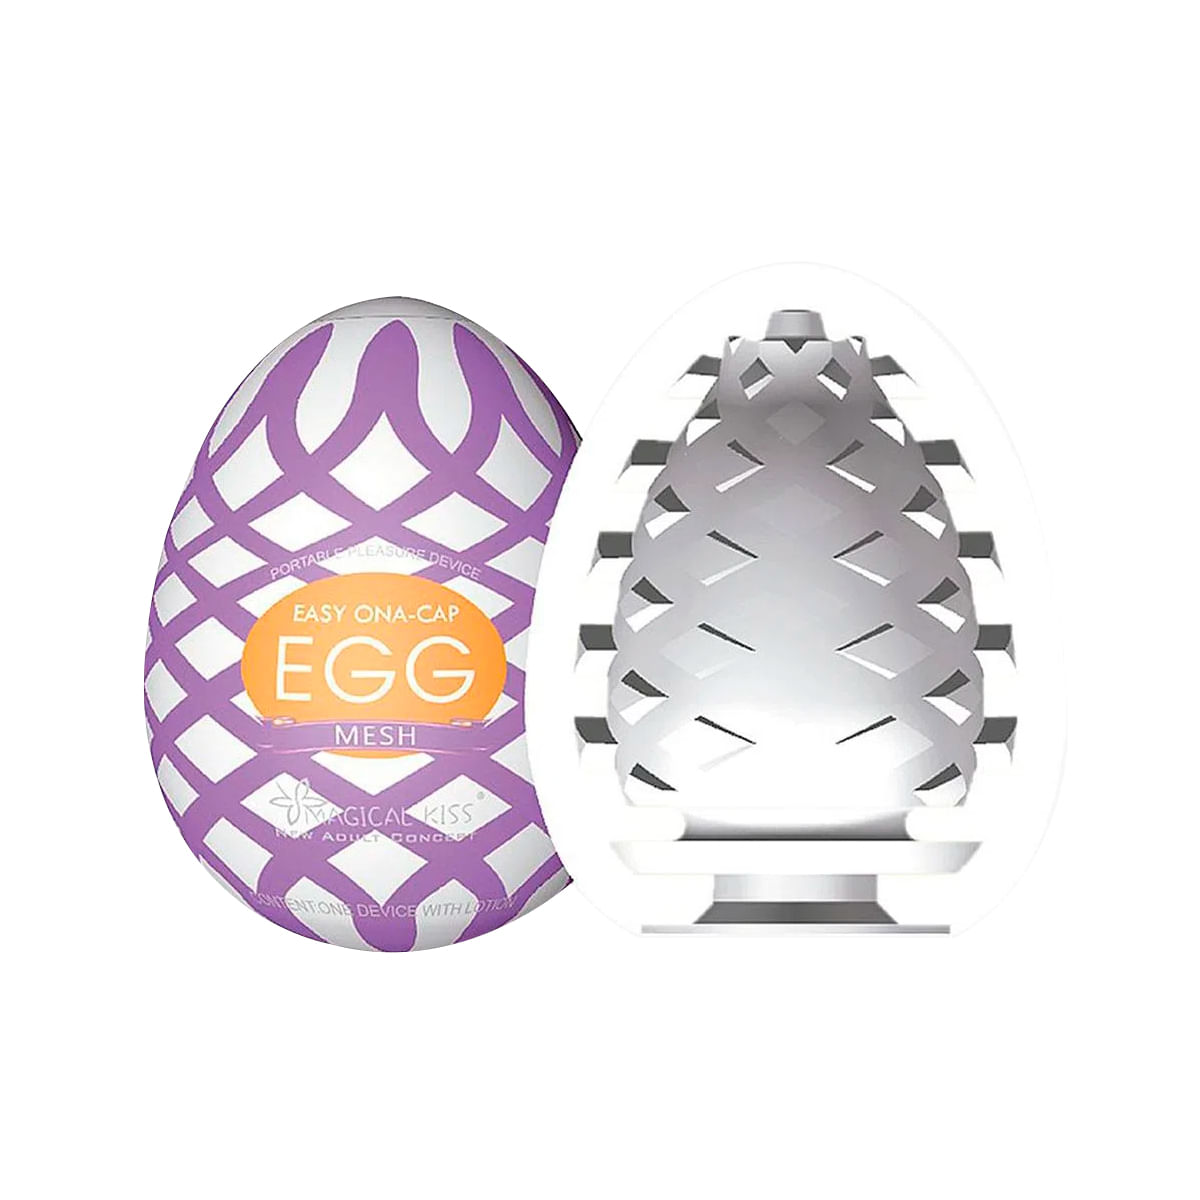 Magical Kiss Easy Ona-Cap Egg Masturbador Masculino Texturizado Sexy Import